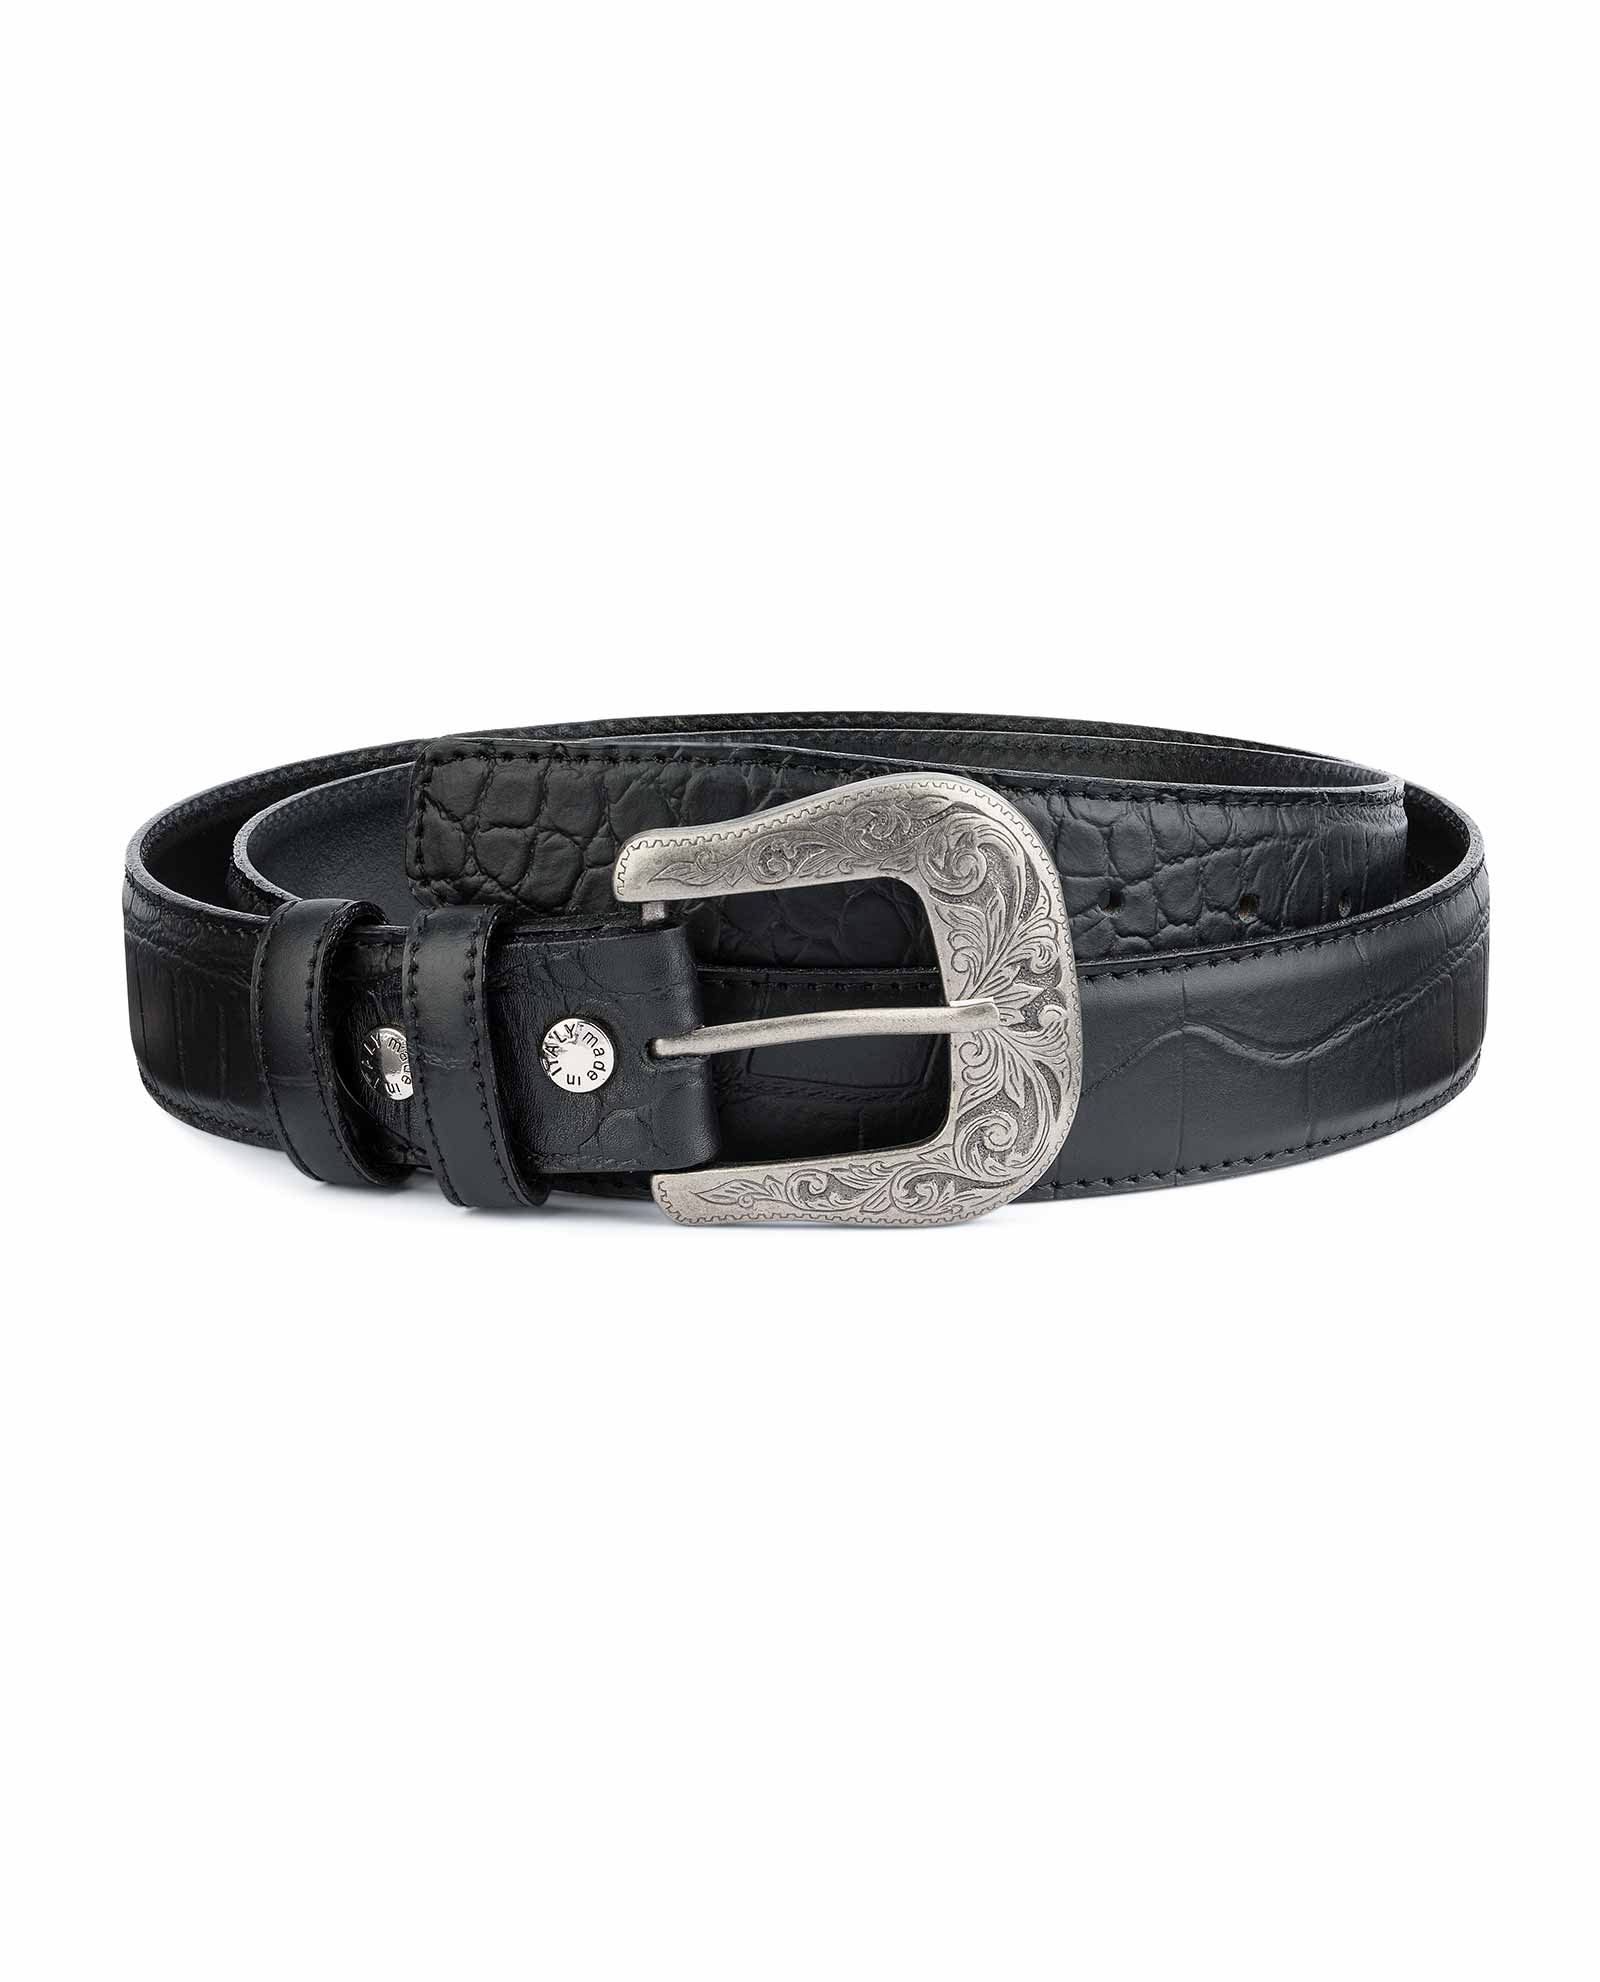 Buy Black Western Belt Mens | Crocodile Embossed Leather ...